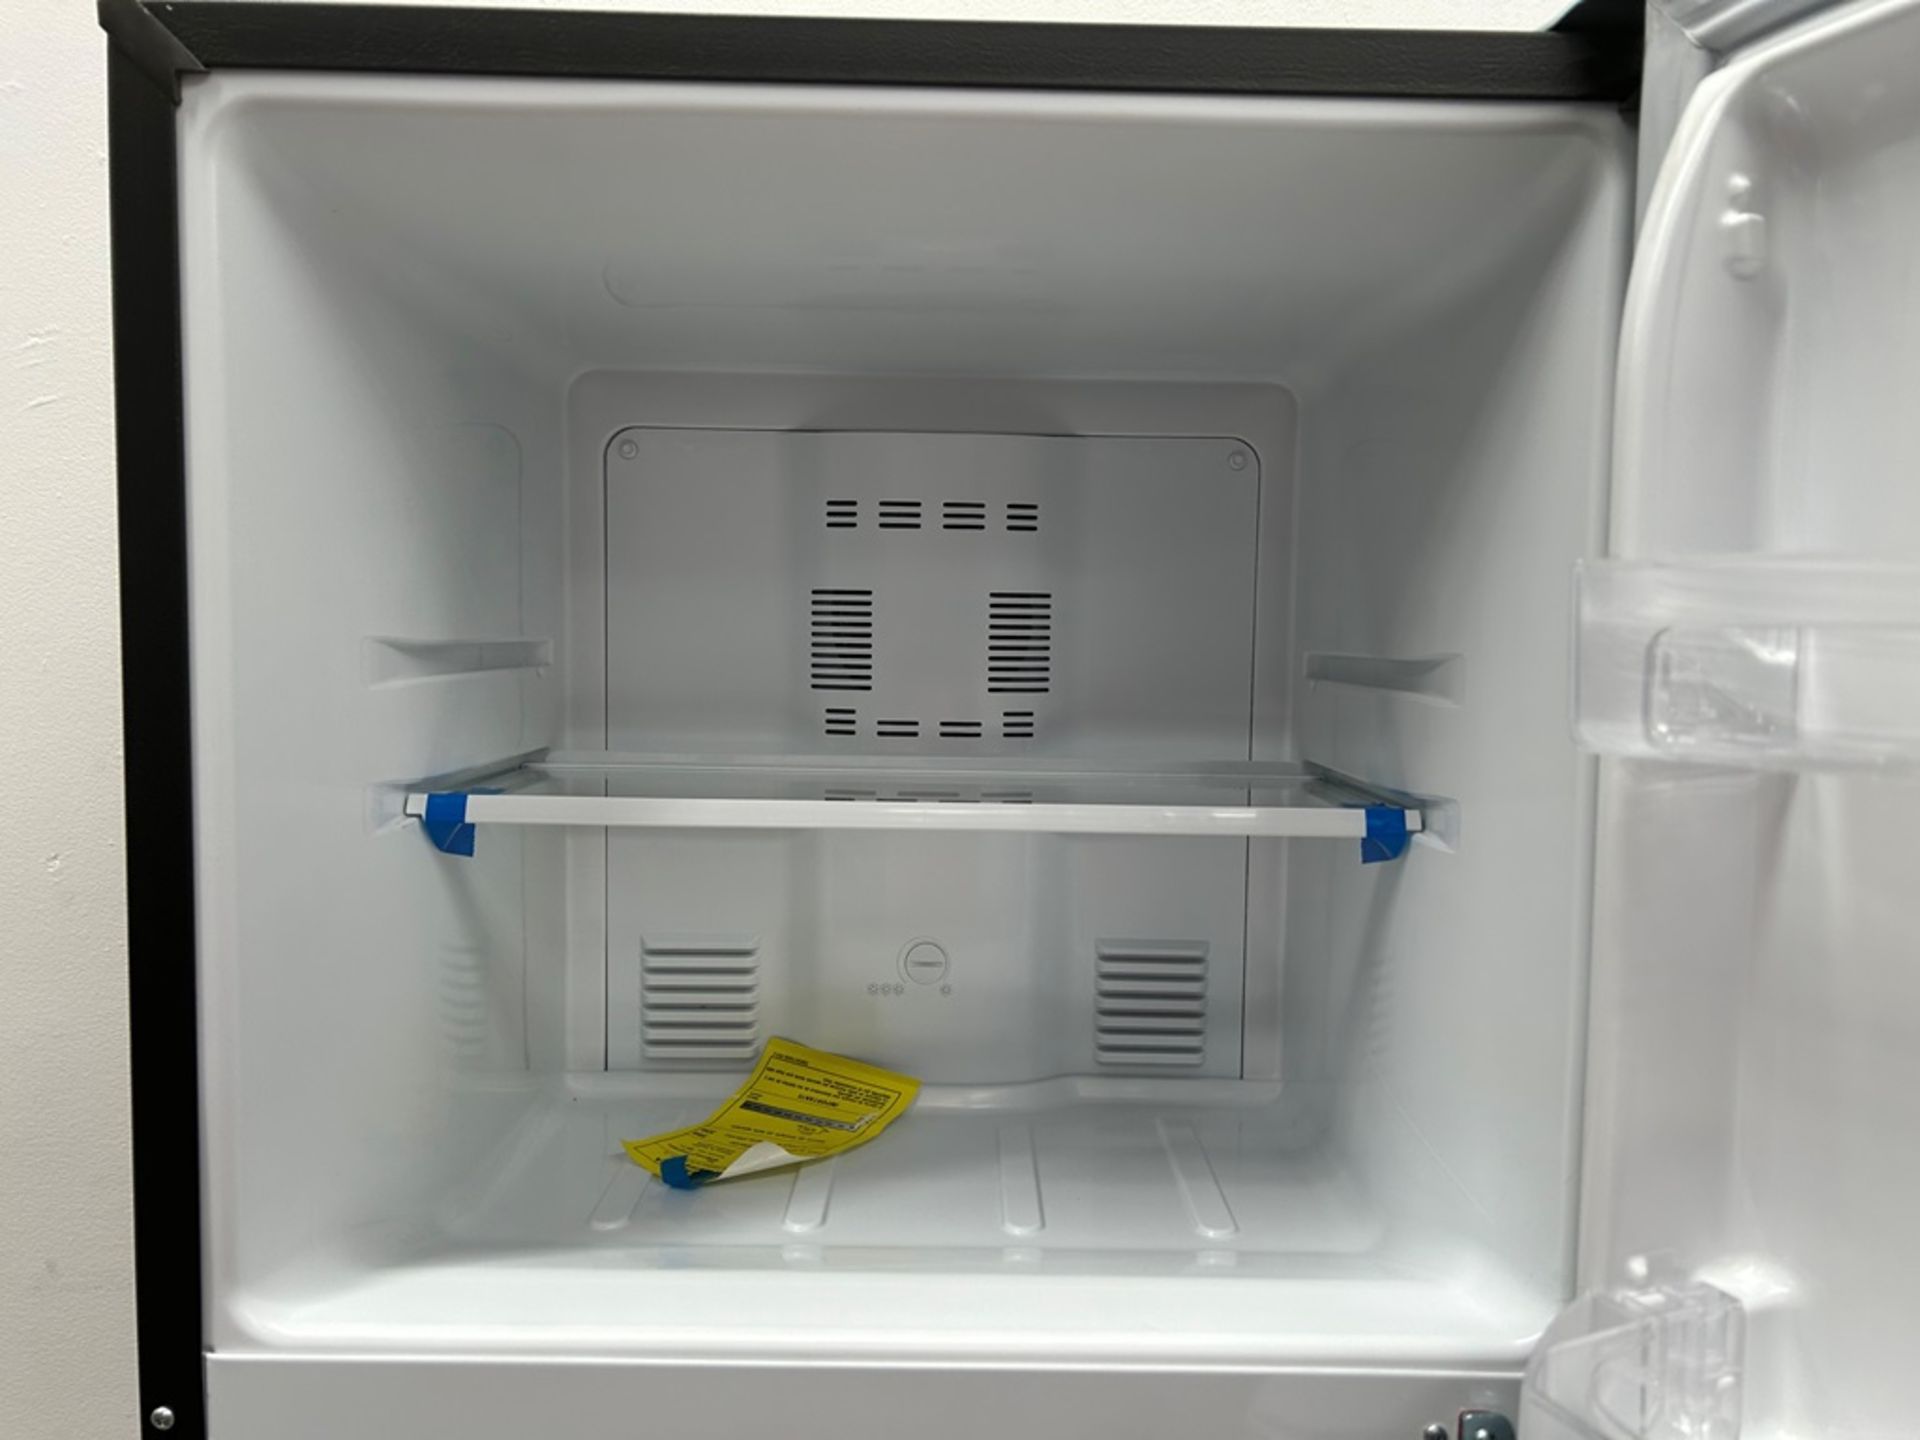 Lote de 2 refrigeradores contiene: 1 refrigerador Marca MABE, Modelo RME360FVMRMA, Serie 816455, Co - Image 5 of 18